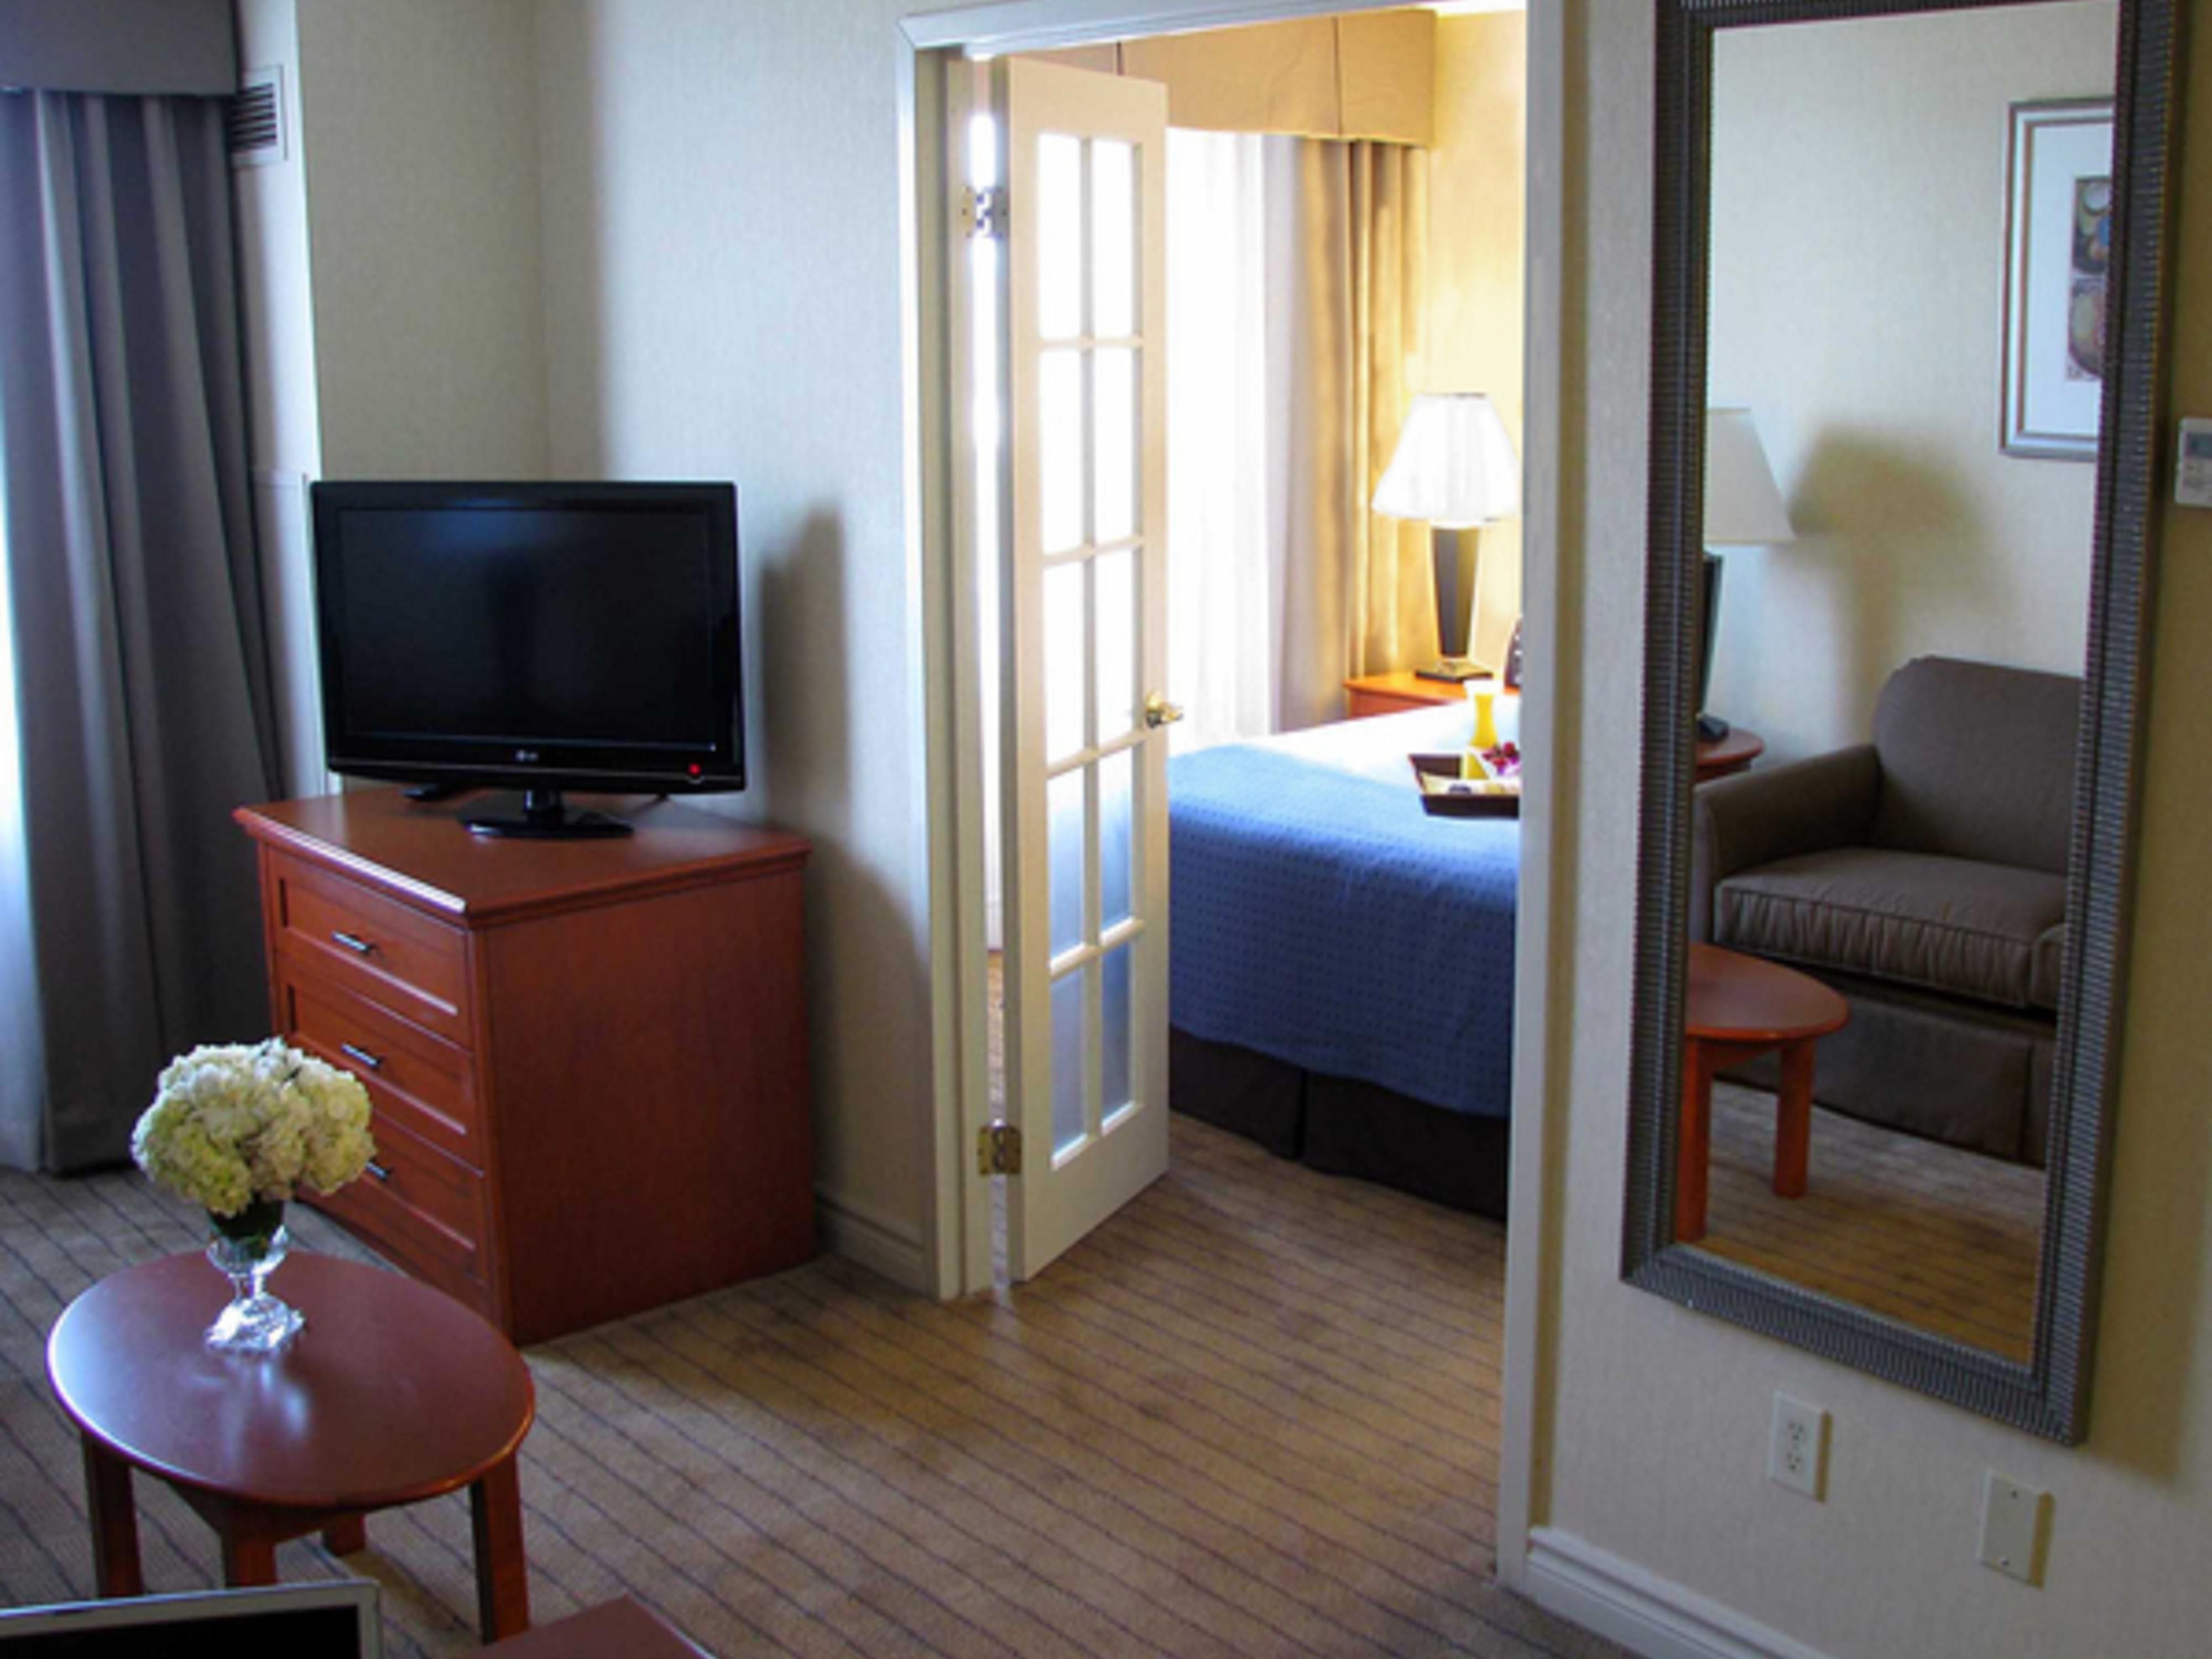 Chambres d'hôtel Holiday Inn